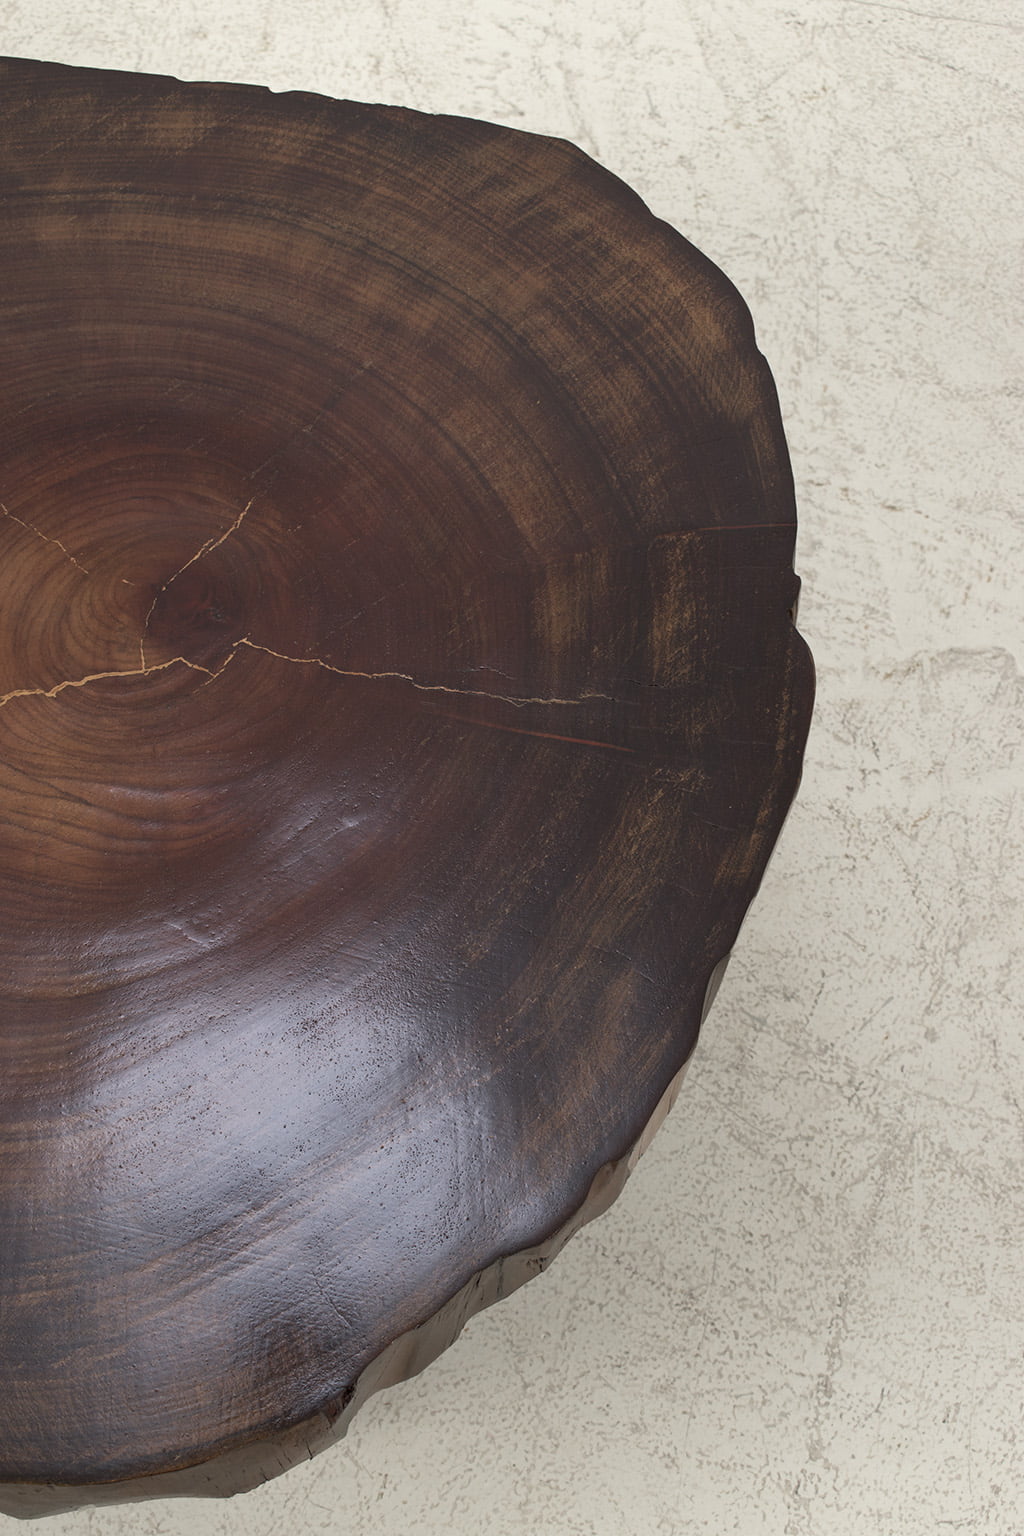 domein nieuws scheiden Salontafel van een boomstam - Decennia Design